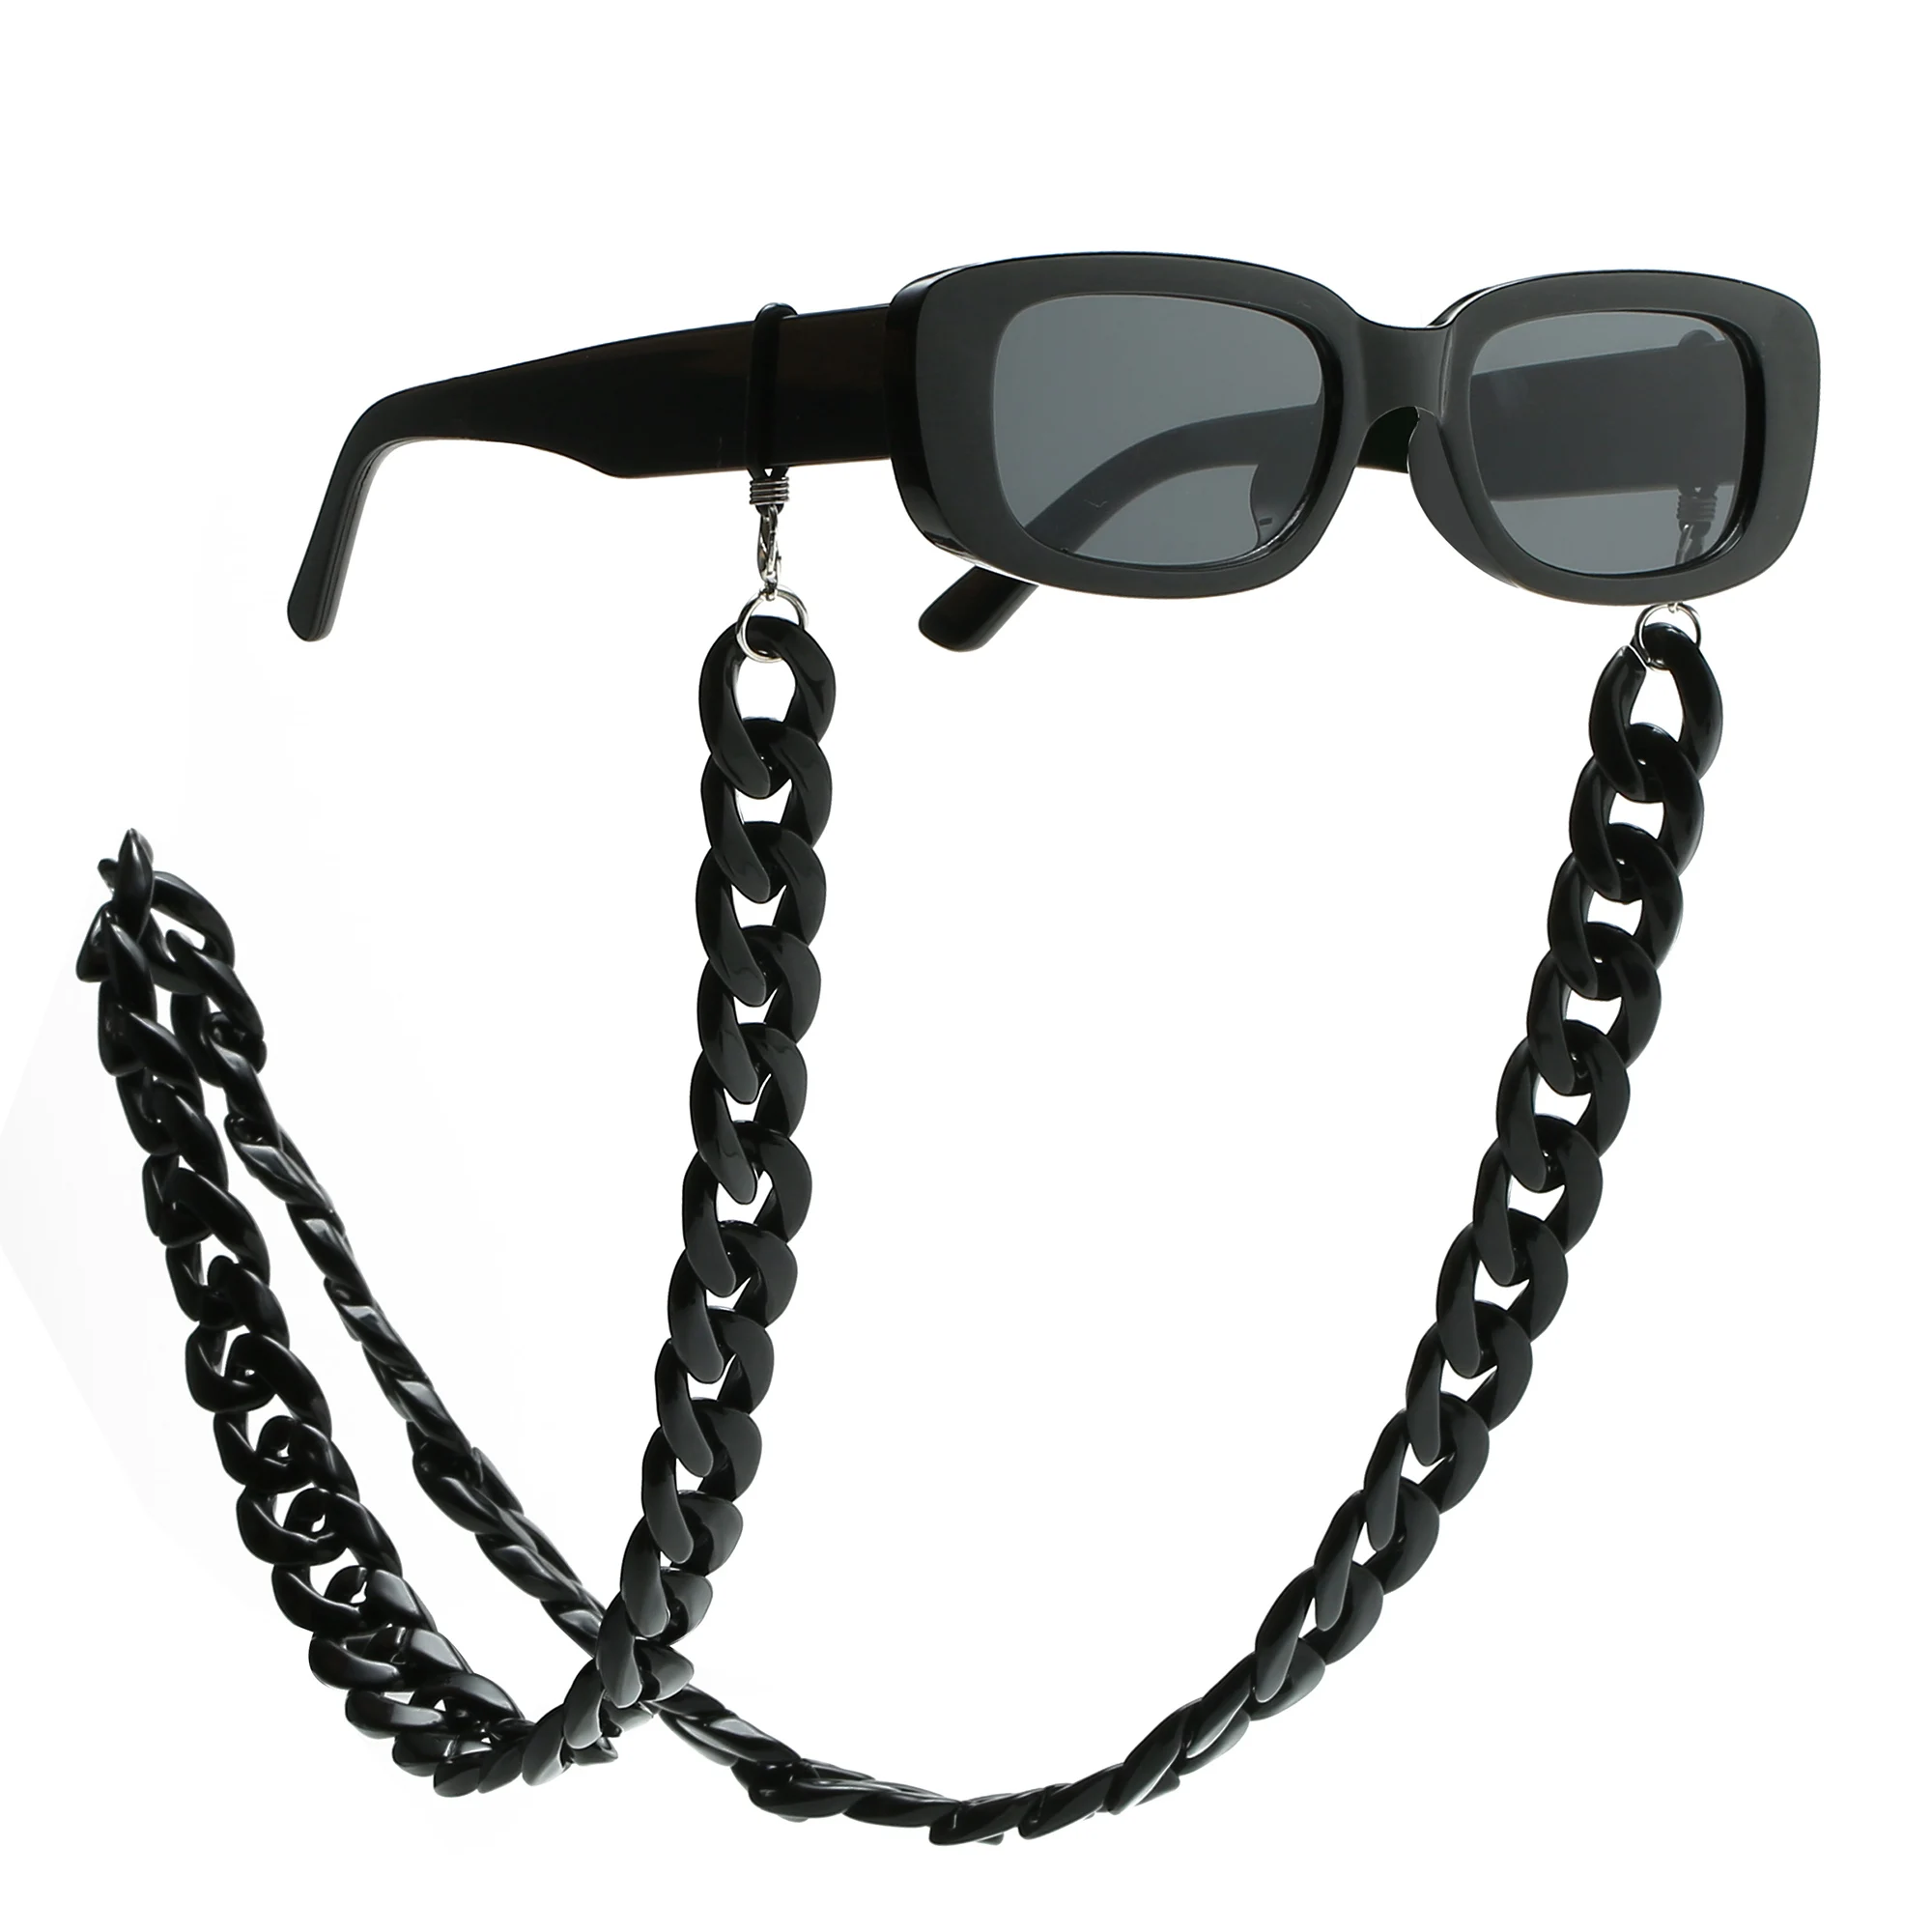 2020 Fashion Acrylic Reading Glasses Hanging Neck Chain Sunglasses Chain lanyard 21 Colors Glasses Chain eyeglasses strap Summer